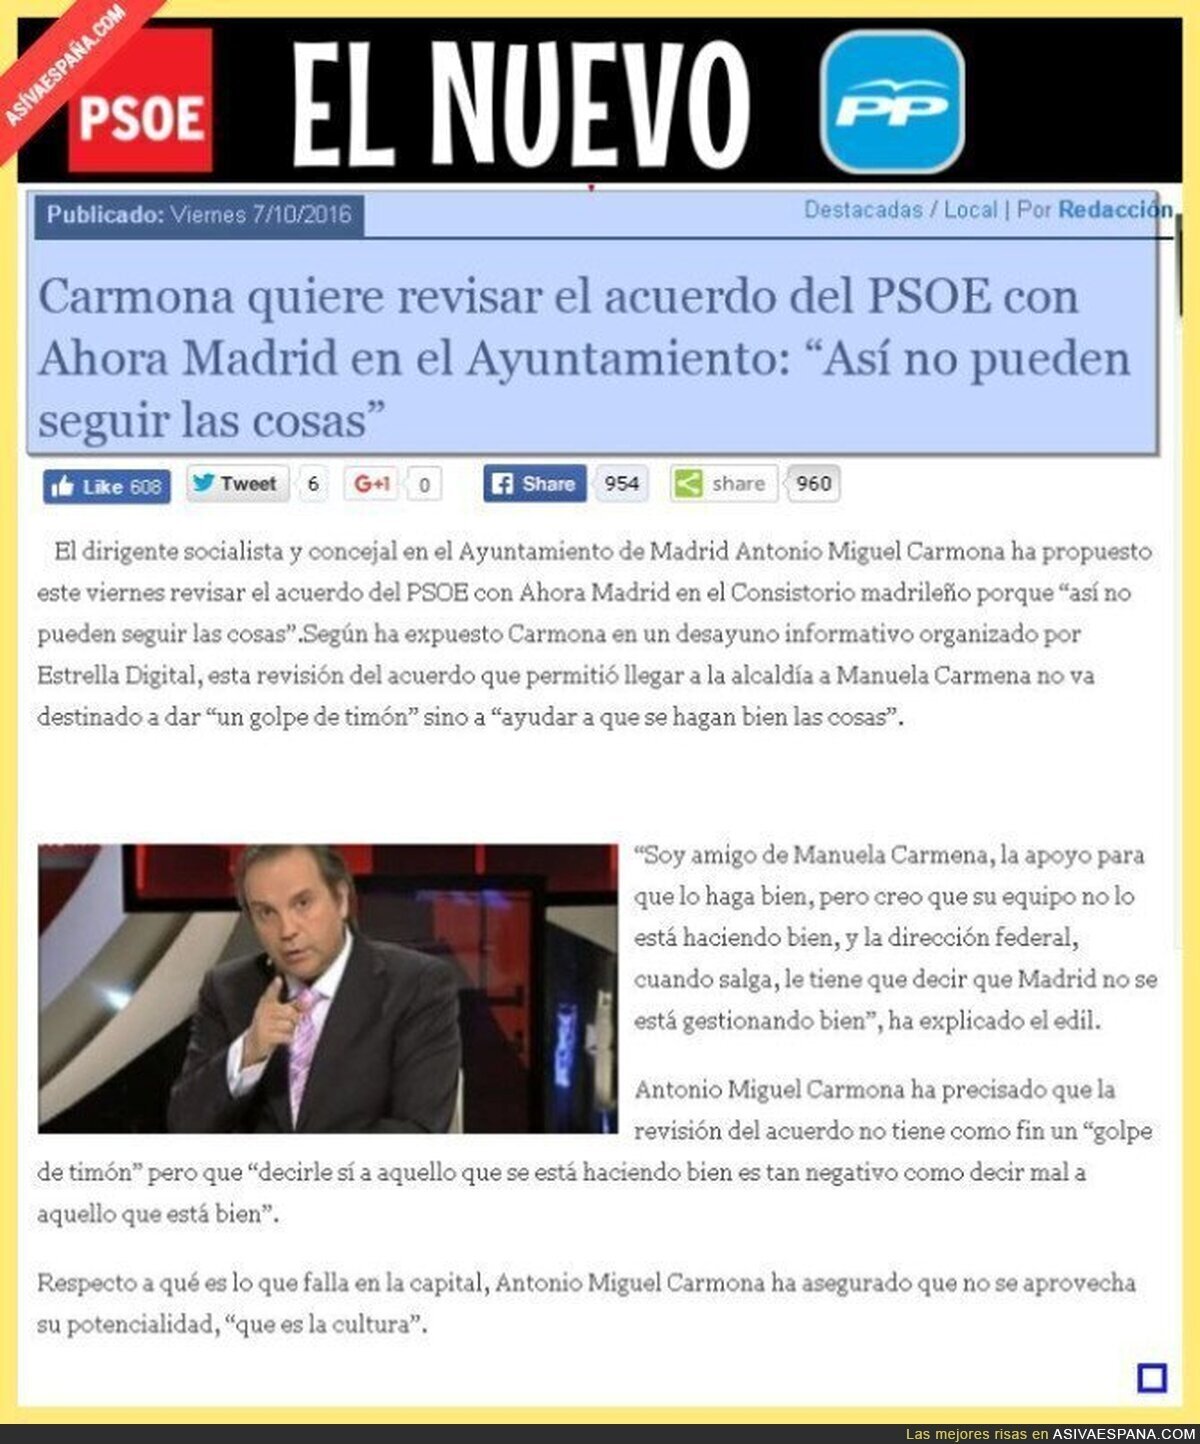 Poner a Rajoy en el Gobierno y a Esperanza Aguirre en Madrid. El PSOE es el nuevo PP